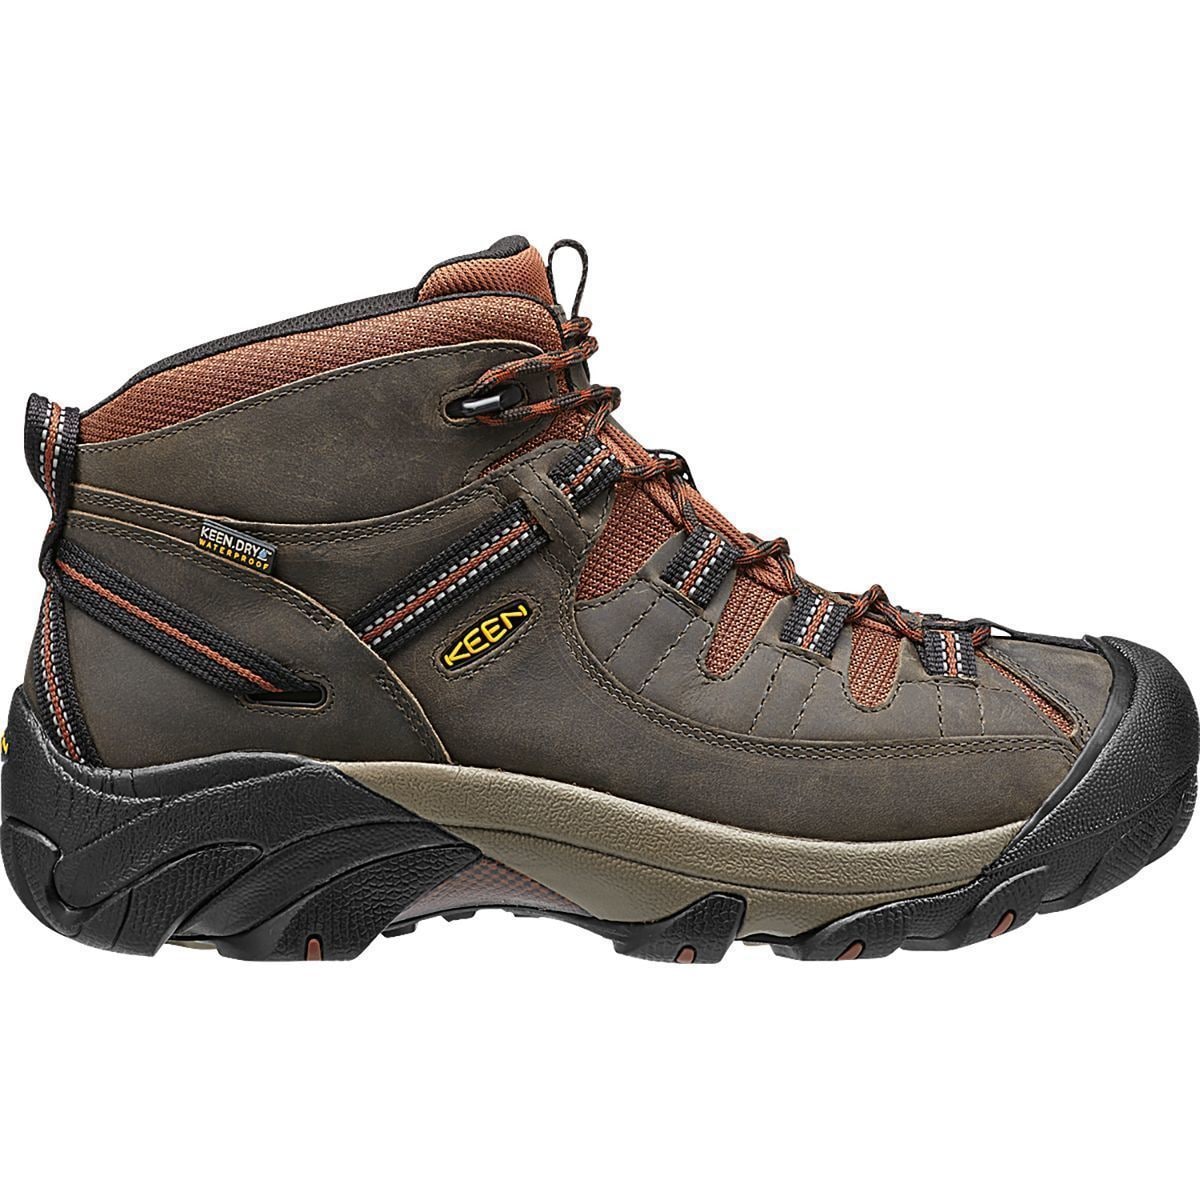 Targhee II Mid Waterproof Hiking Boot - Men